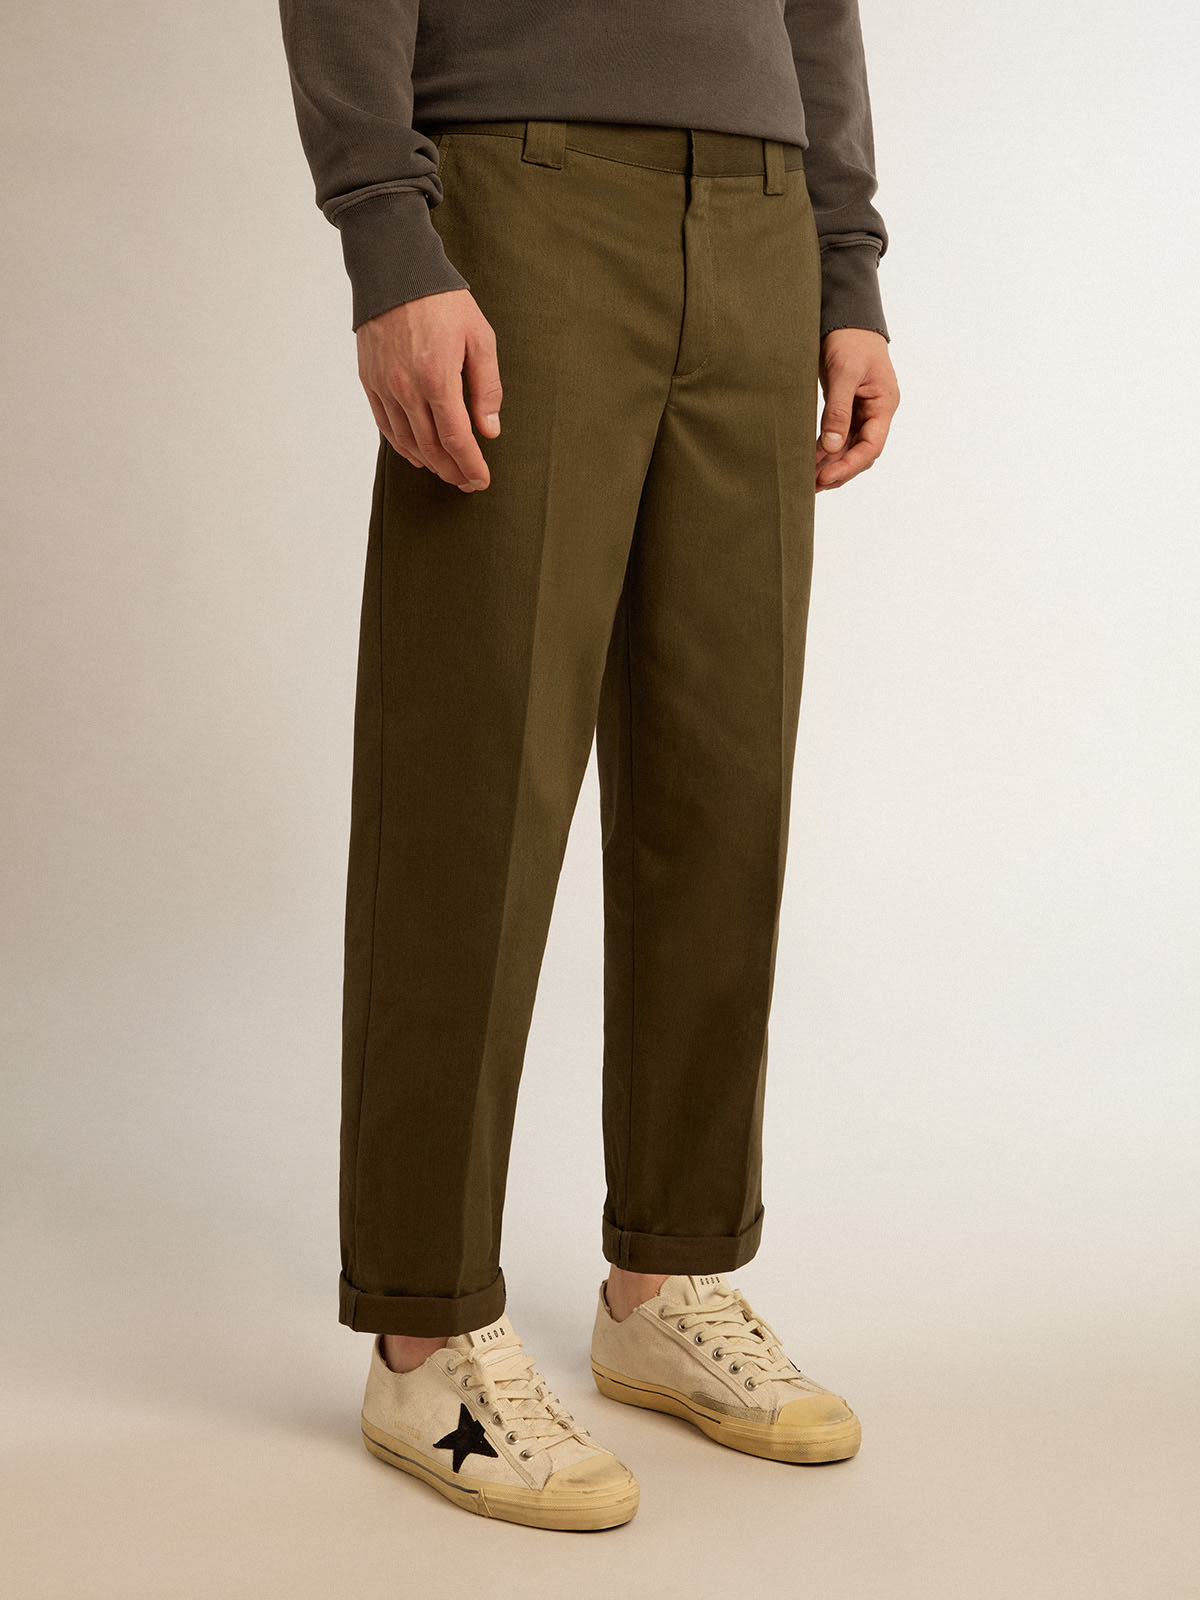 Golden Goose - Pantalón chino de la colección Golden en color verde militar in 